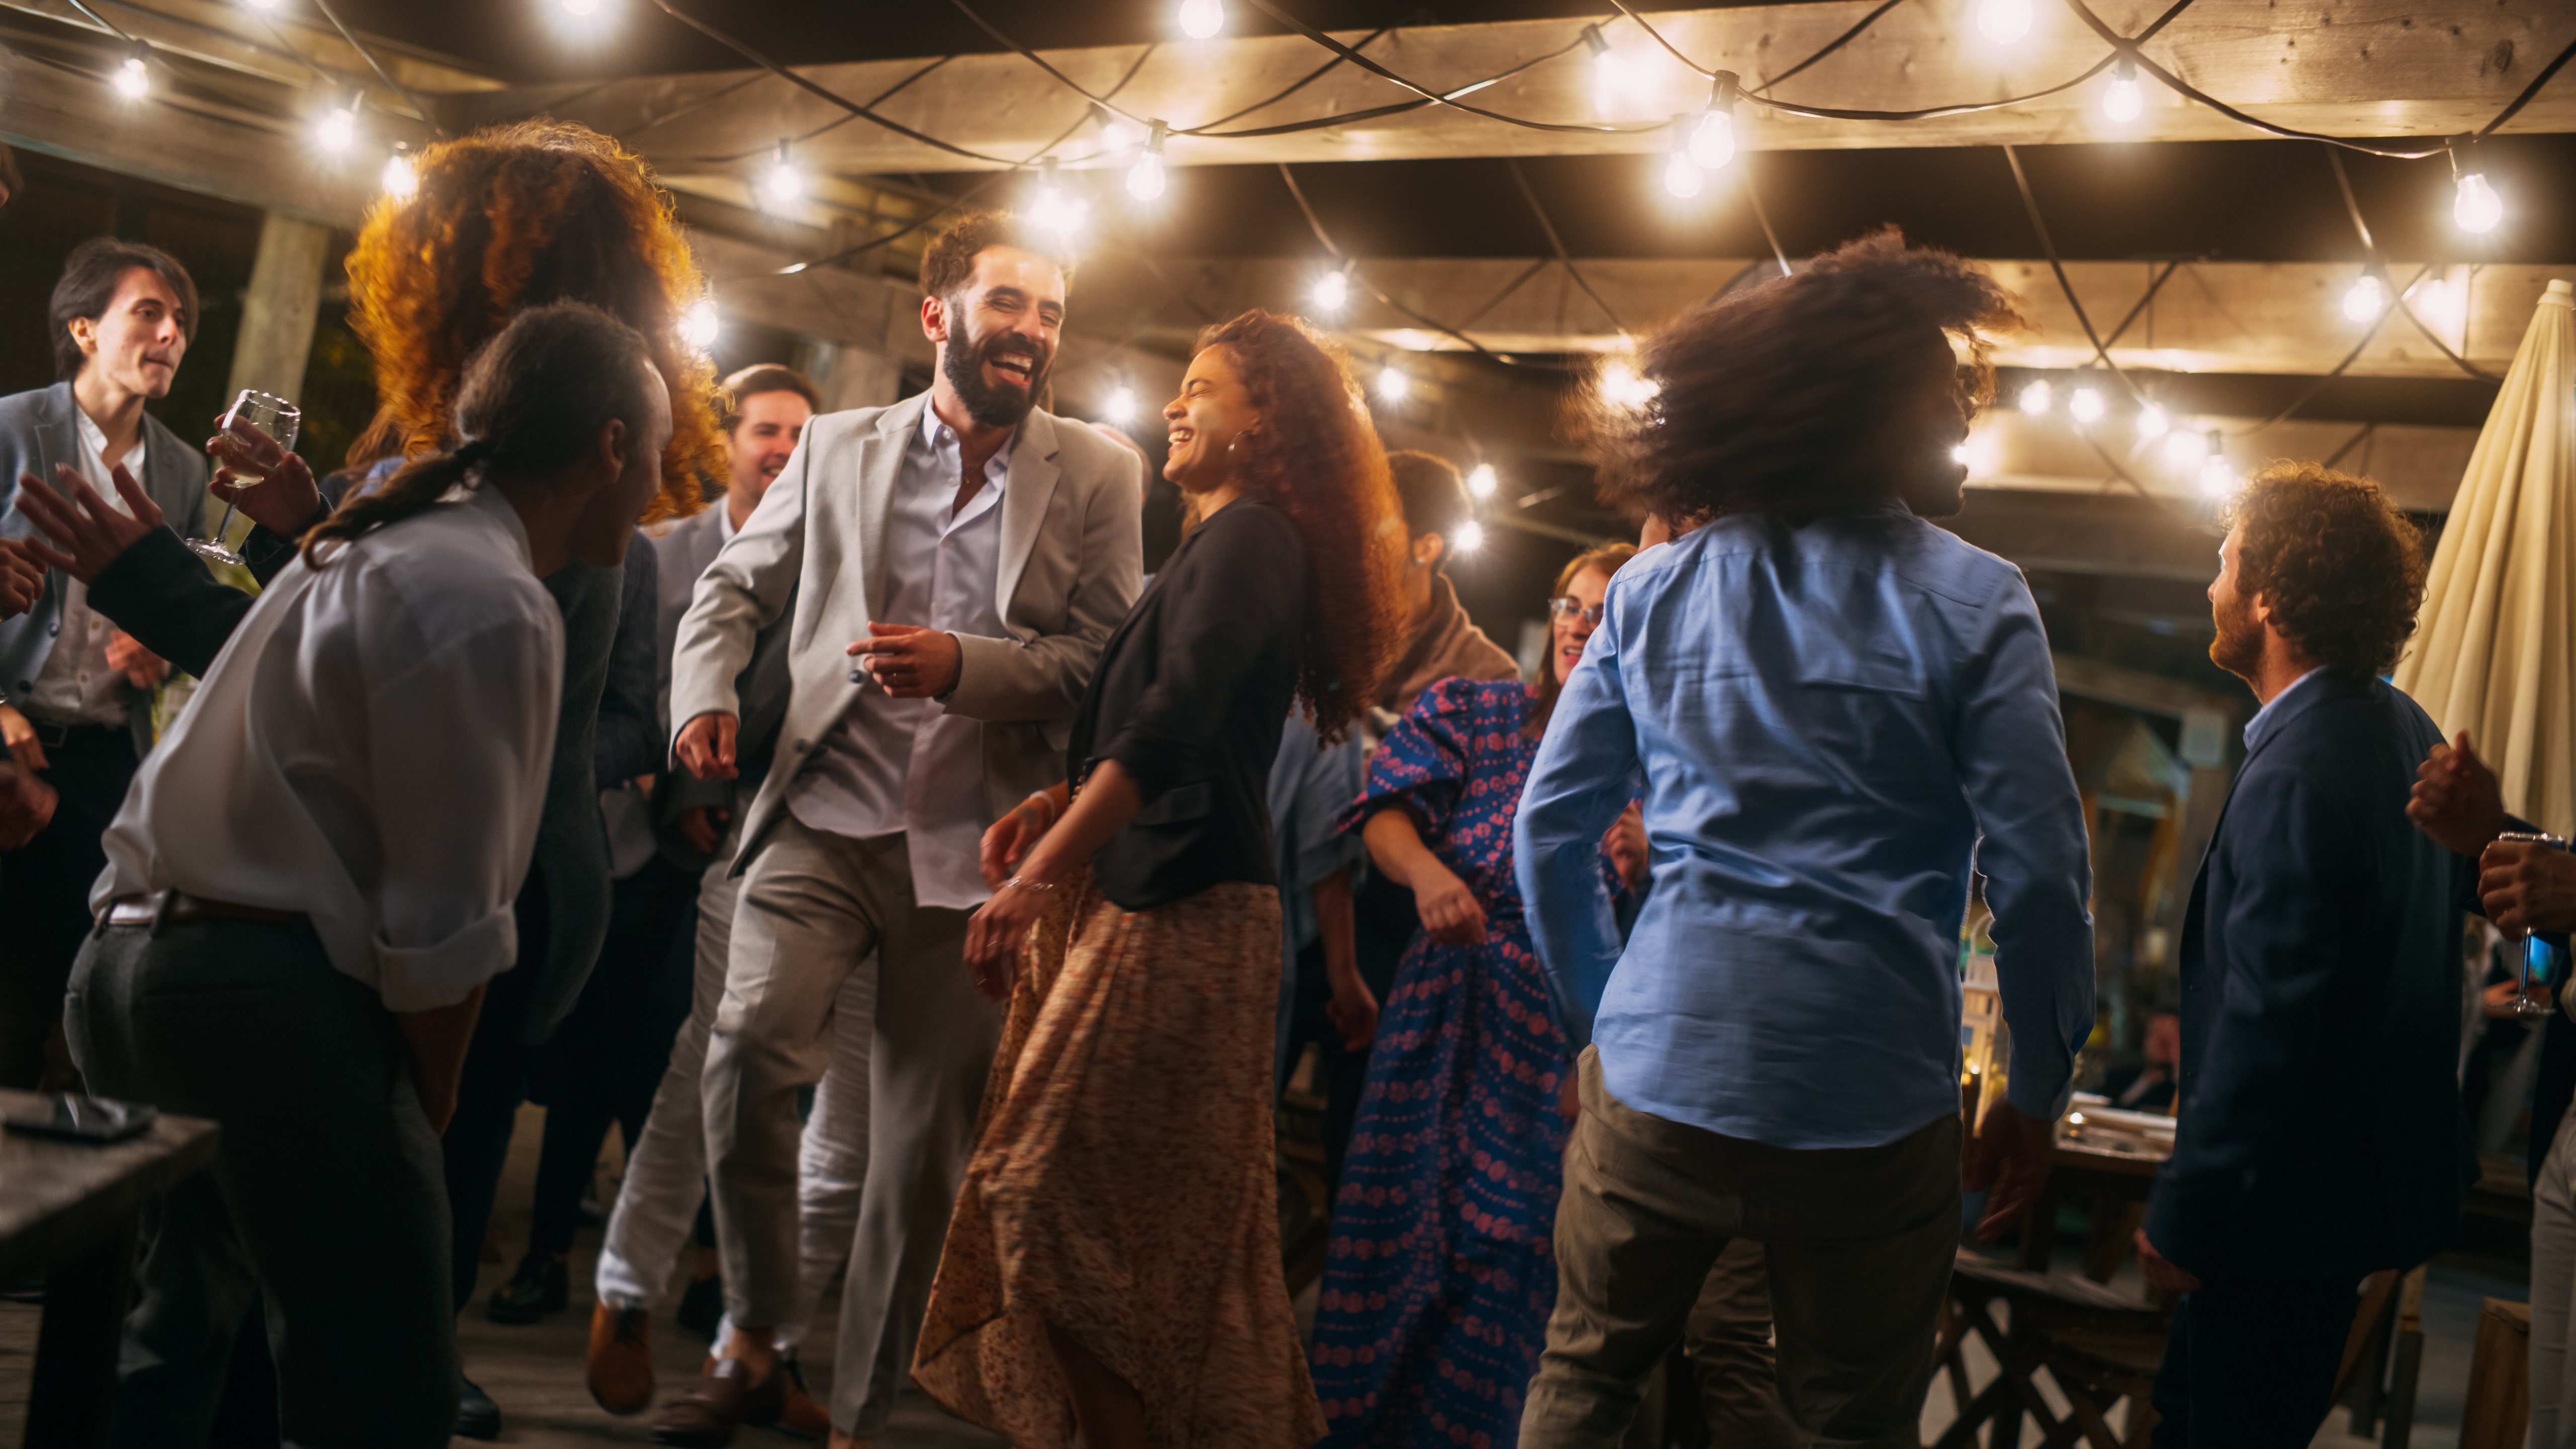 Amigos en una fiesta | Foto: Shutterstock